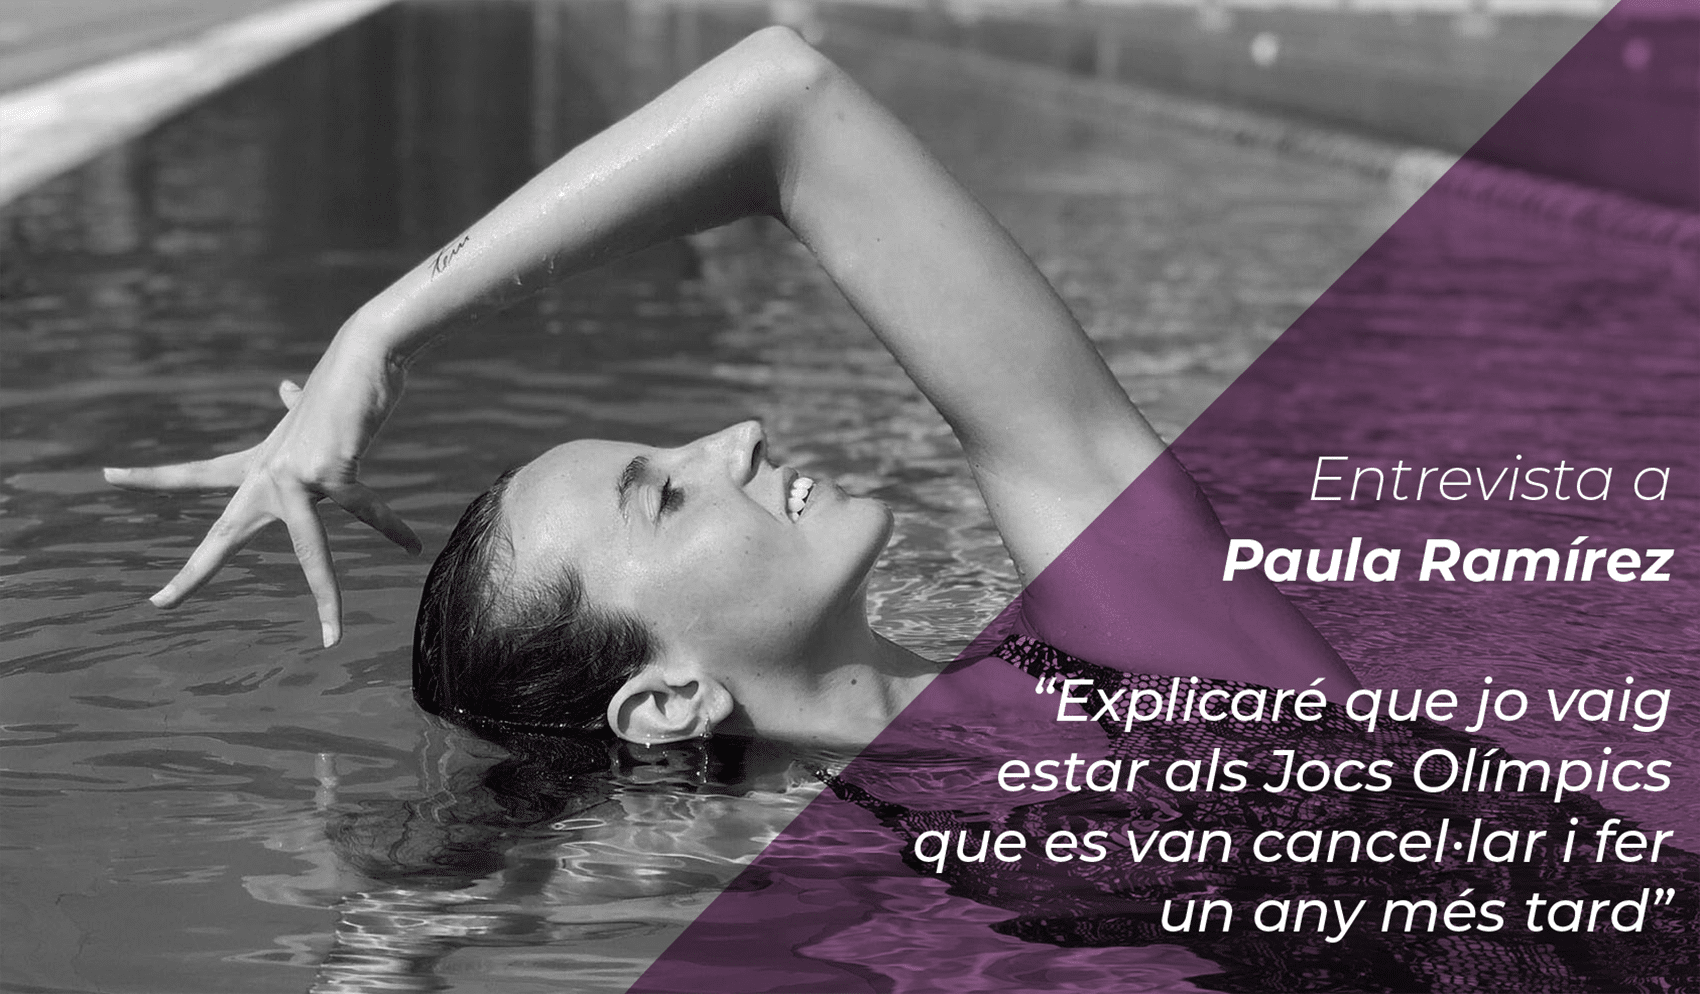 Paula Ramirez: “Explicaré que jo vaig estar als Jocs Olímpics que es van cancel·lar i fer un any més tard” 4